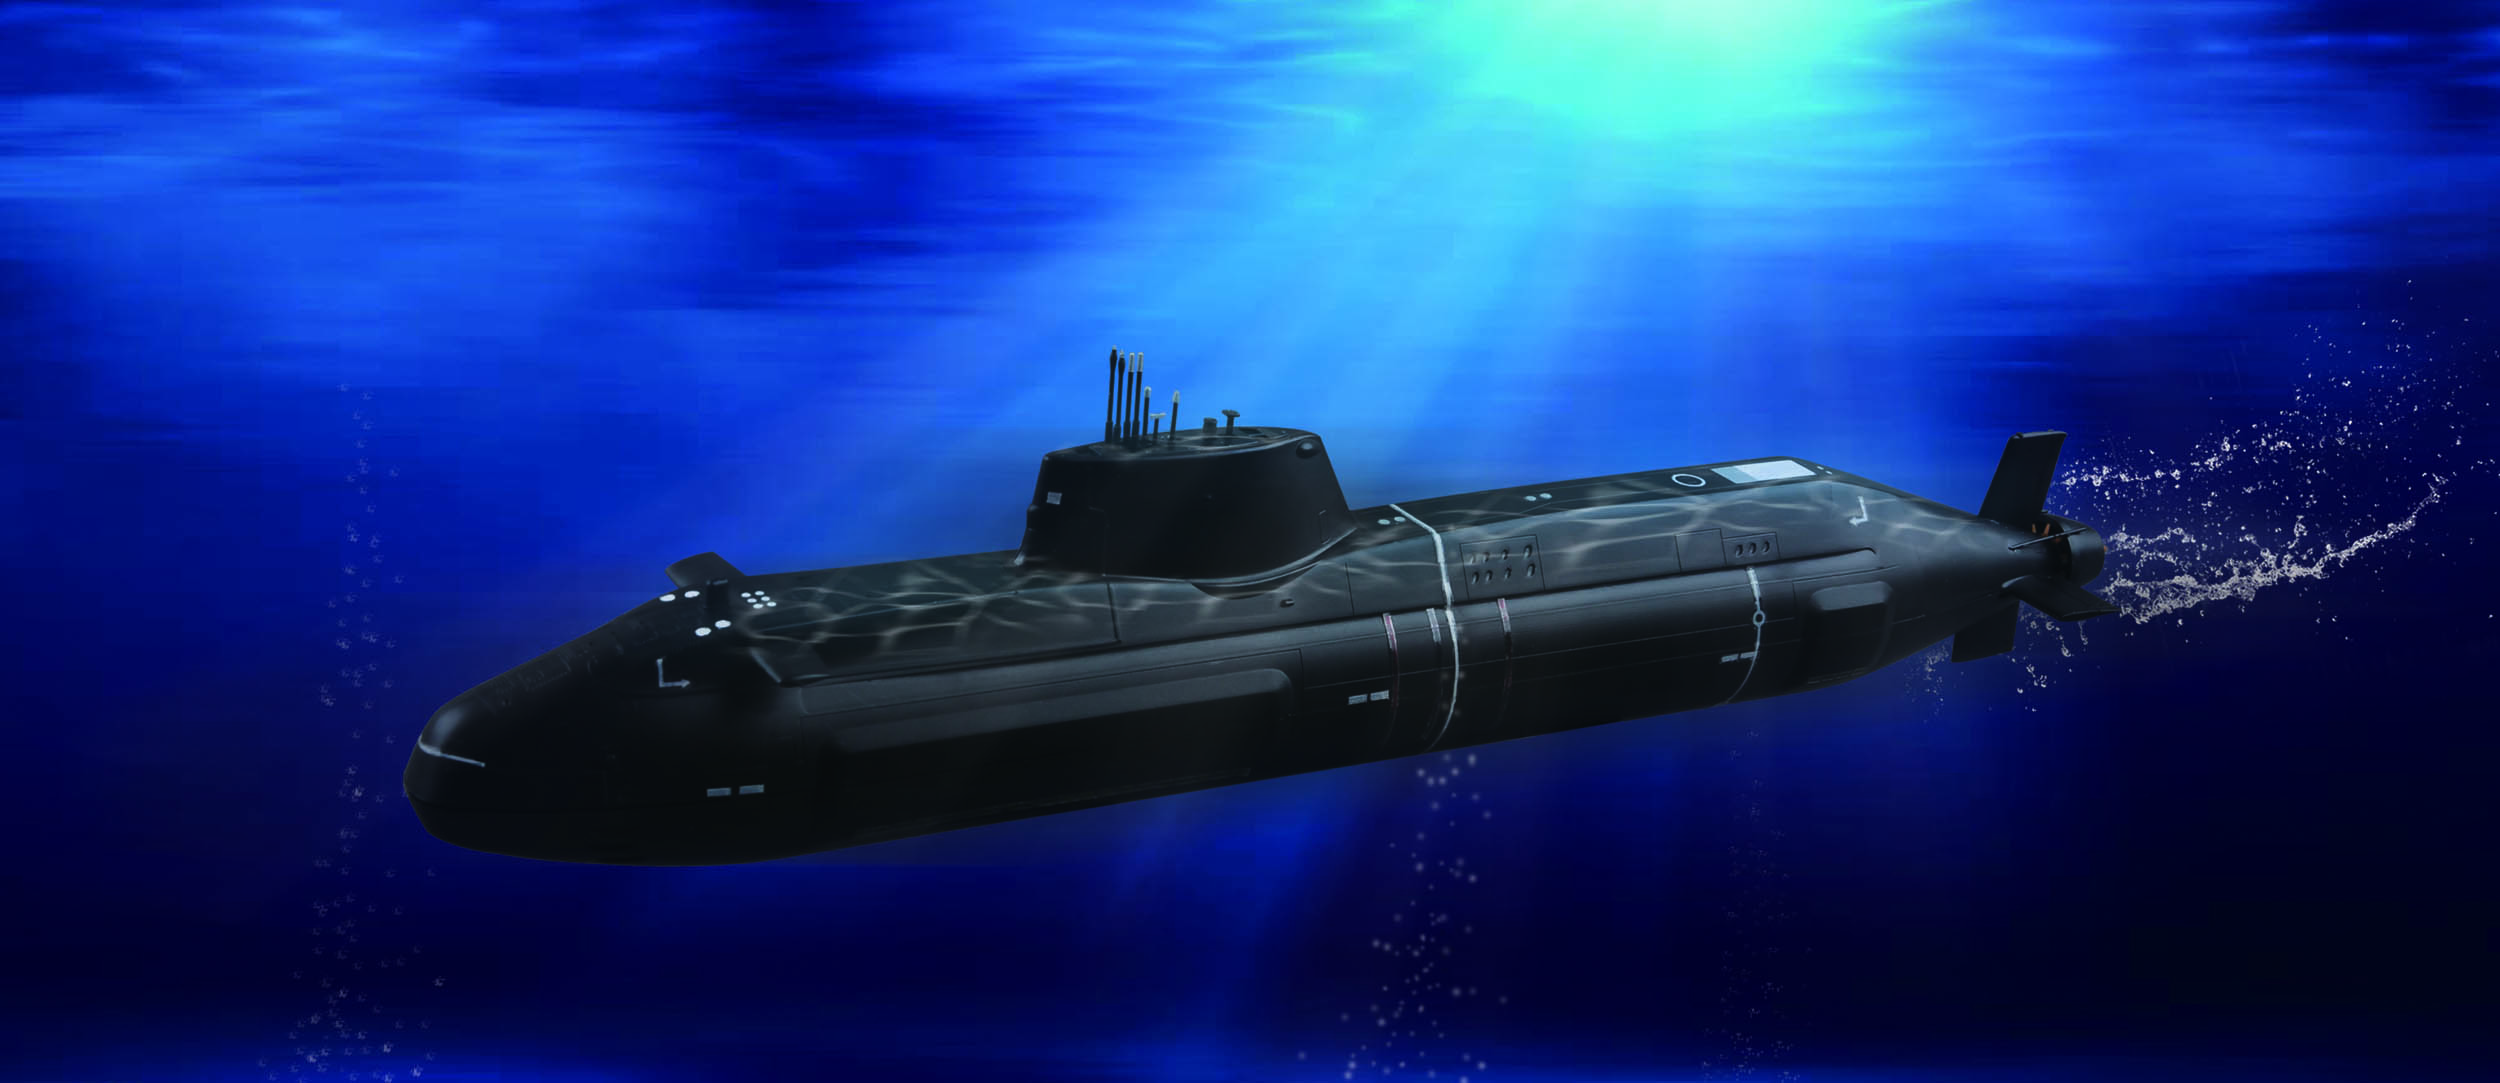 1/350 イギリス海軍 原子力潜水艦 HMS アスチュート [04598] - 2,112円 